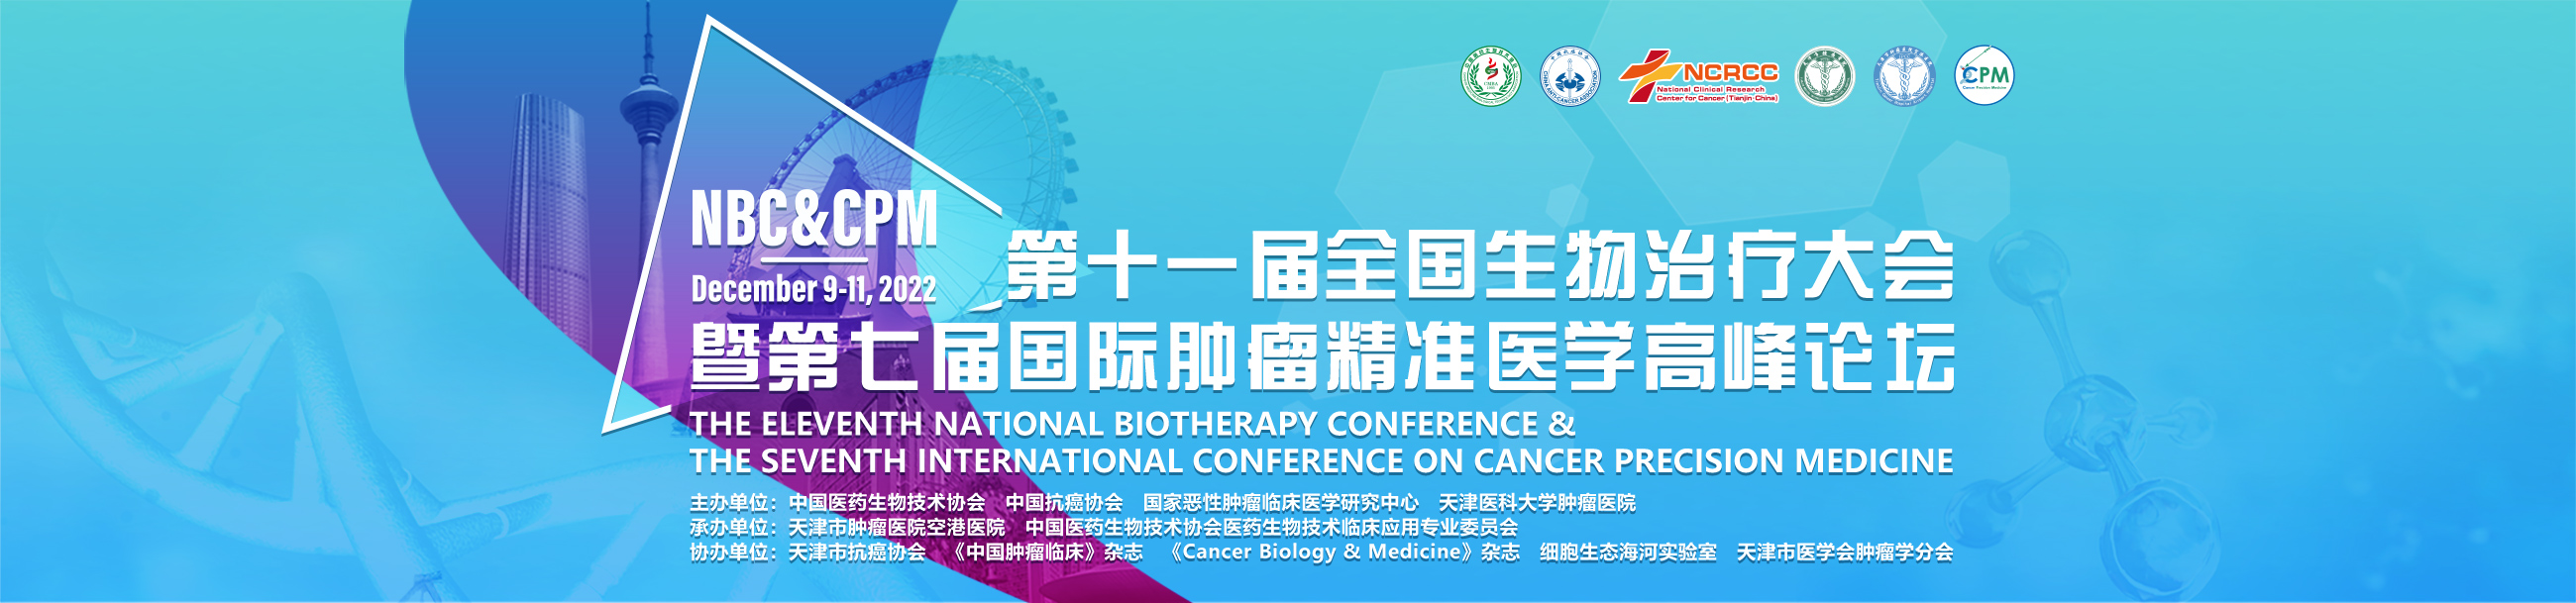 第十一届全国生物治疗大会暨第七届国际肿瘤精准医学高峰论坛